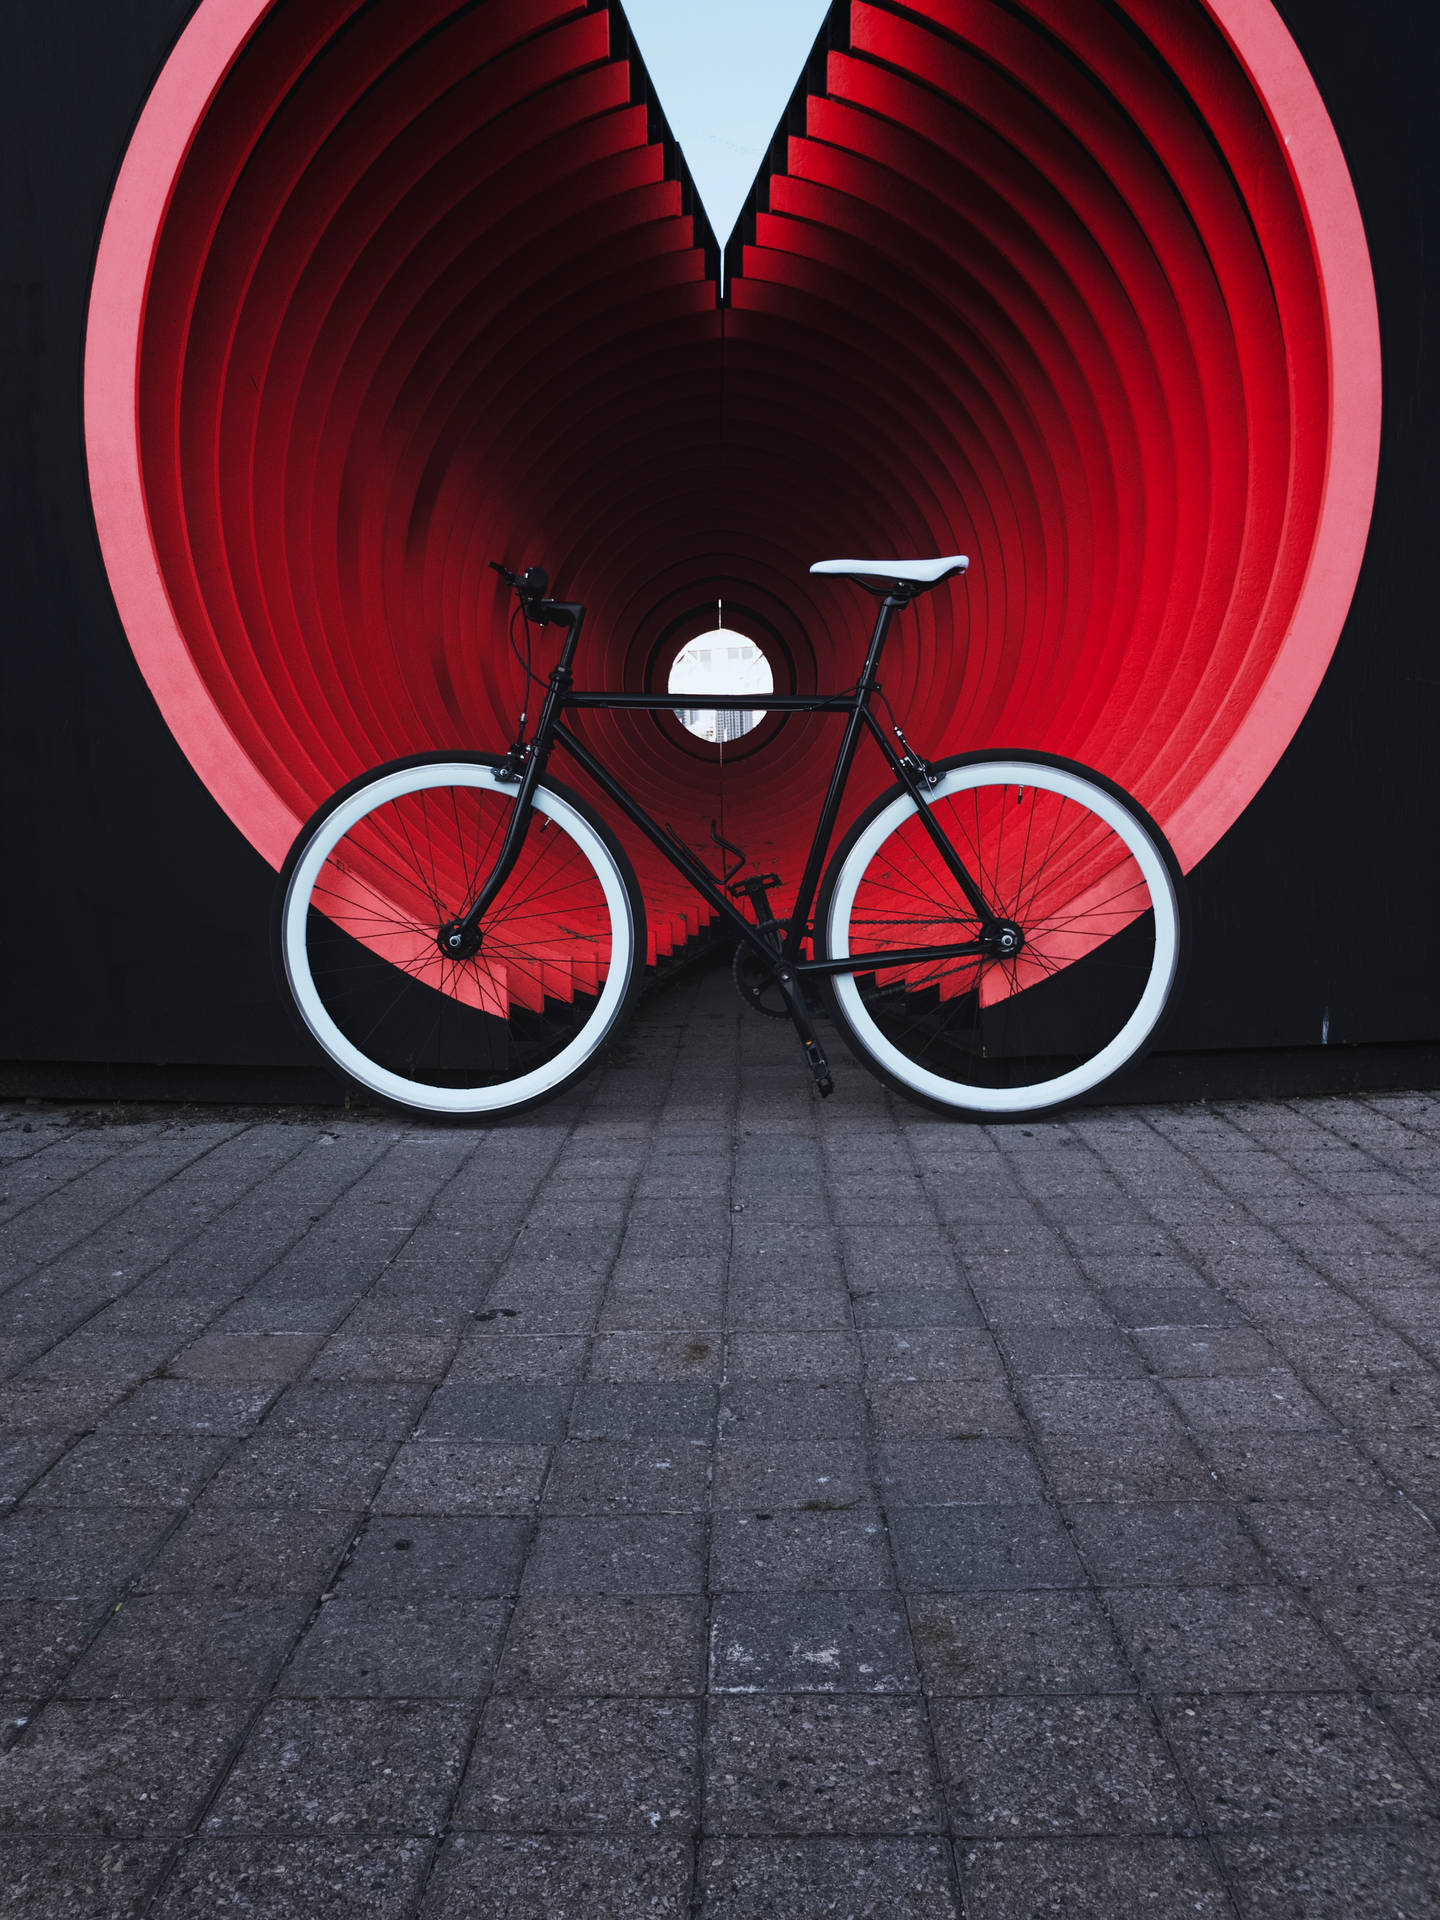 Bike Background